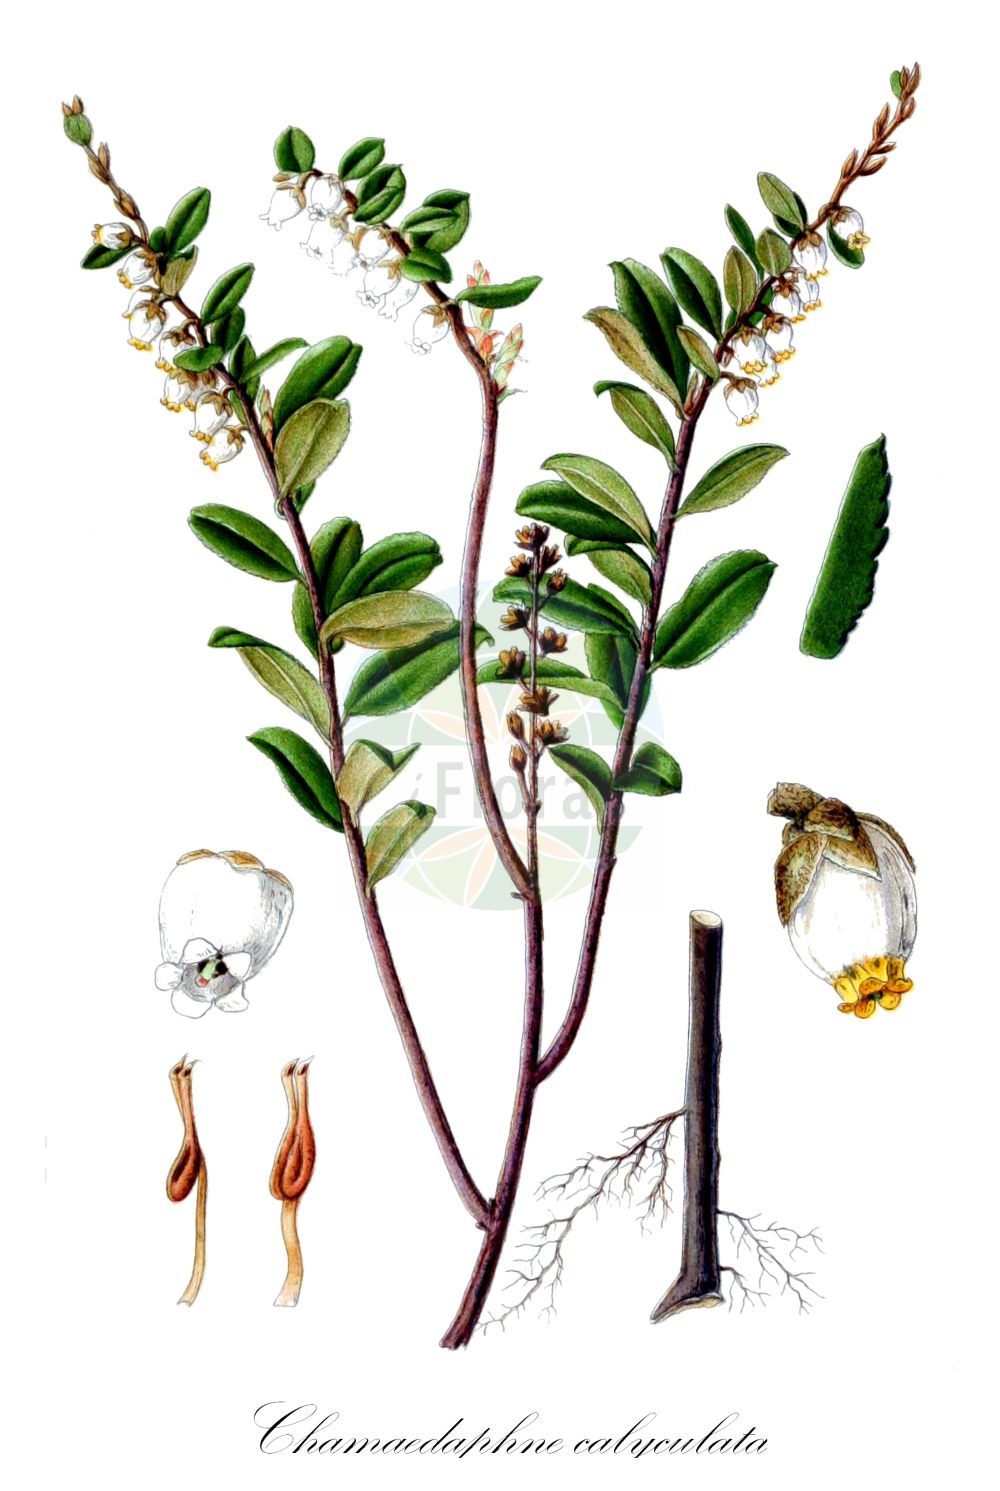 Historische Abbildung von Chamaedaphne calyculata (Torfgränke - Leather-leaf). Das Bild zeigt Blatt, Bluete, Frucht und Same. ---- Historical Drawing of Chamaedaphne calyculata (Torfgränke - Leather-leaf). The image is showing leaf, flower, fruit and seed.(Chamaedaphne calyculata,Torfgränke,Leather-leaf,Andromeda calyculata,Cassandra calyculata,Chamaedaphne calyculata,Torfgraenke,Leather-leaf,Chamaedaphne,Zwerglorbeer,Leatherleaf,Ericaceae,Heidekrautgewächse,Heath family,Blatt,Bluete,Frucht,Same,leaf,flower,fruit,seed,Lindman (1901-1905))